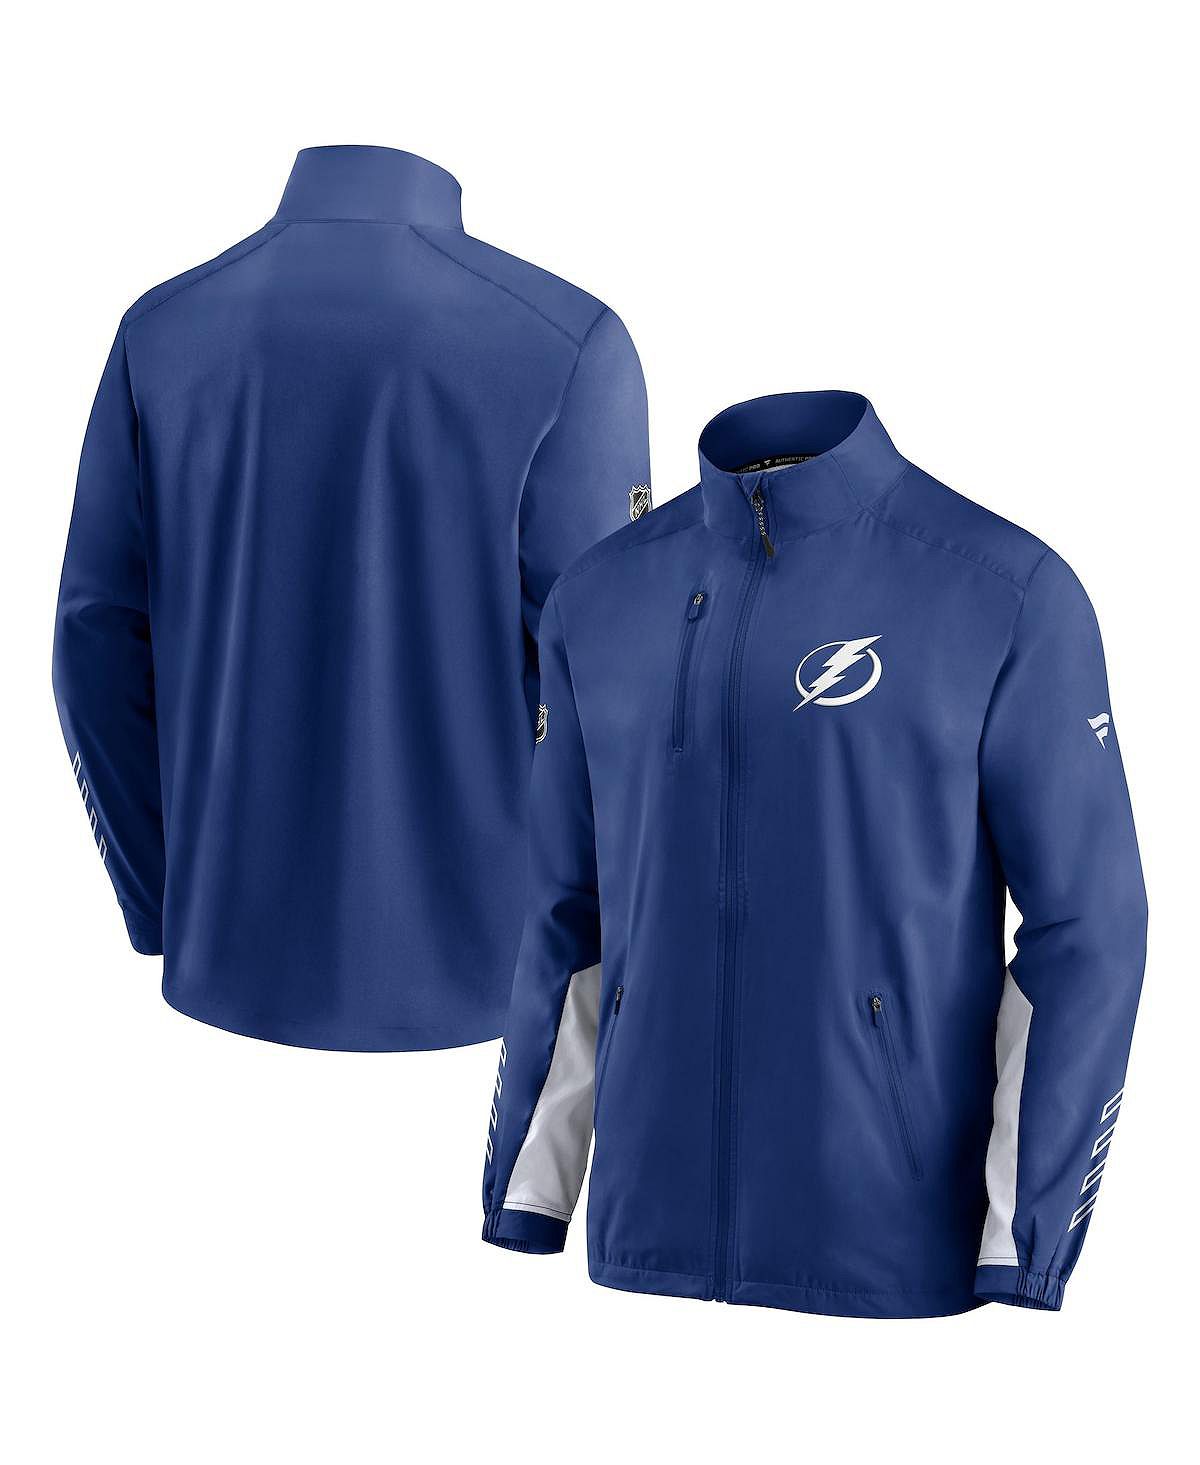 Мужская фирменная синяя куртка tampa bay lightning authentic pro locker room rinkside с полной молнией Fanatics, синий шайба rubena tampa bay lightning stanley cup champions 2020